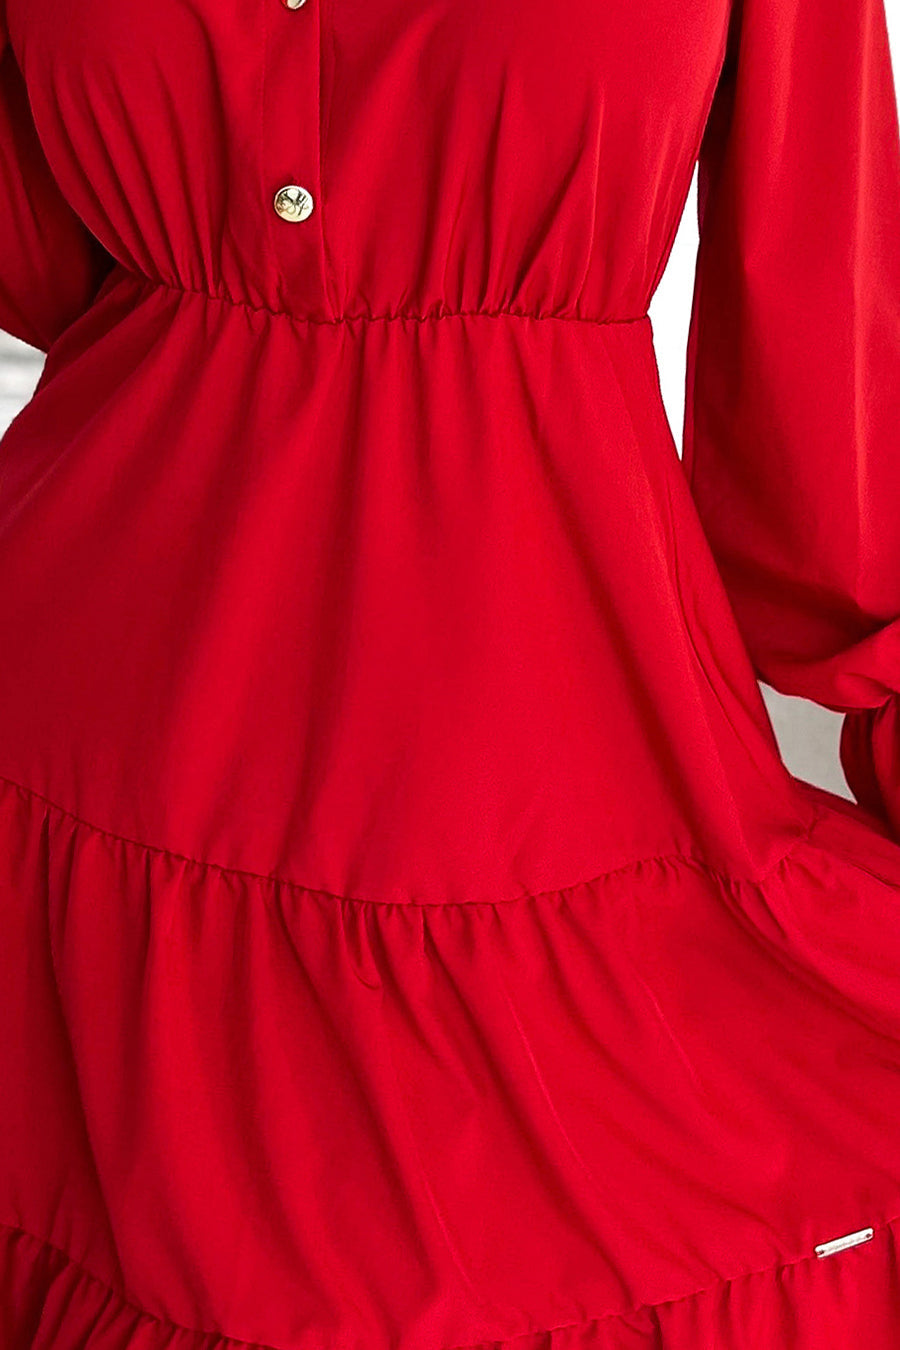 Γυναικείο φόρεμα Anemona, Κόκκινο 6